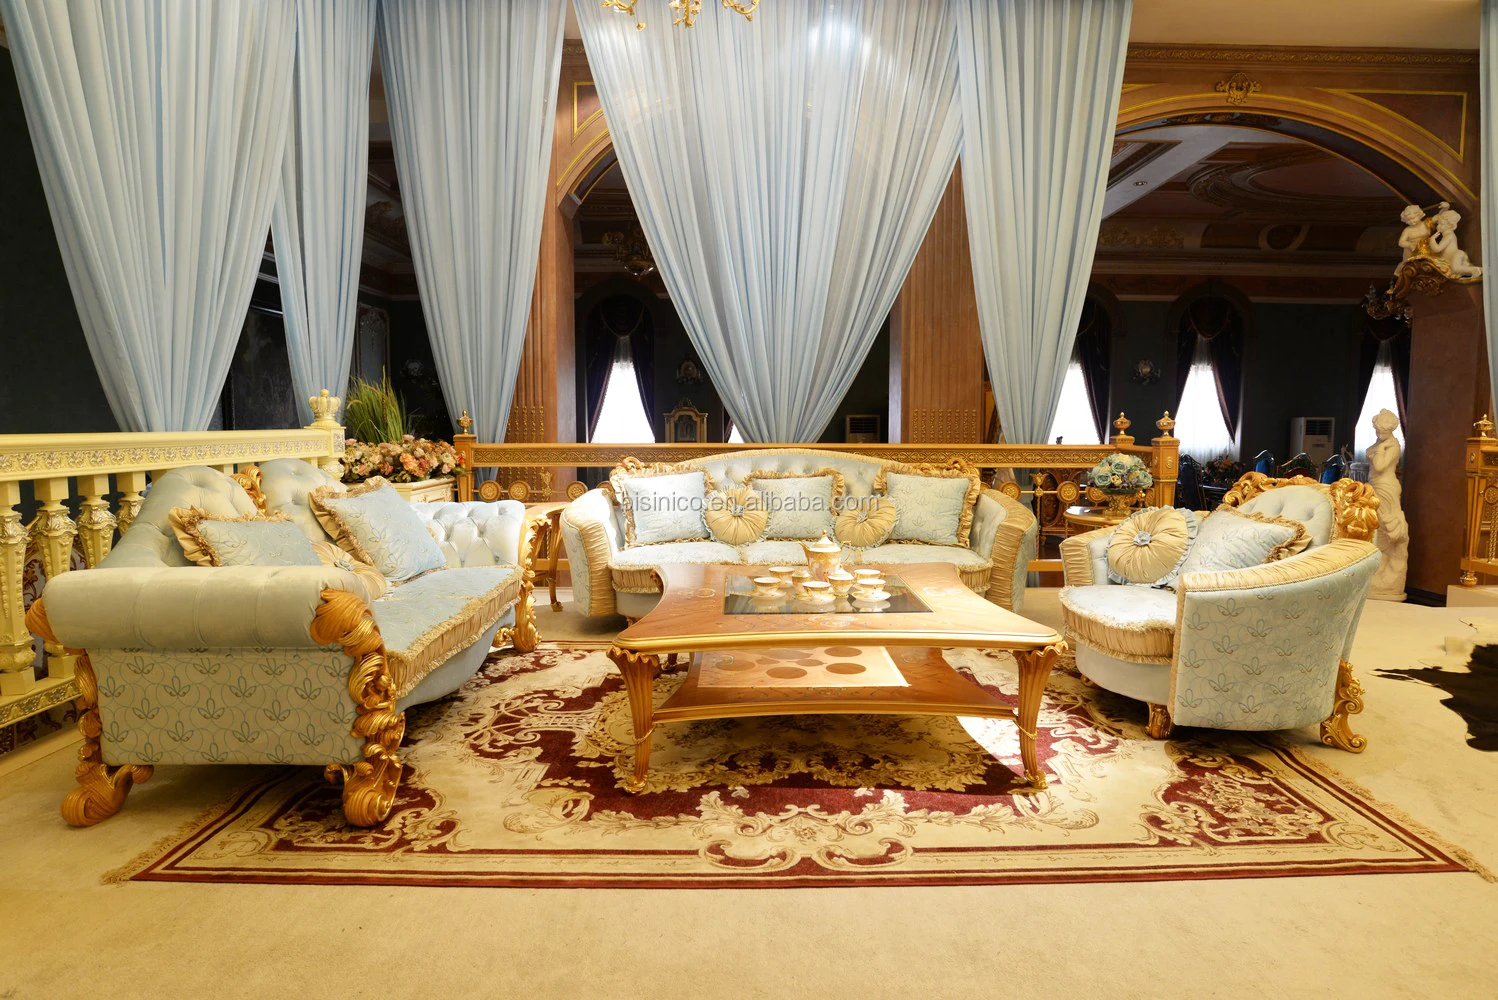 豪华维多利亚风格实木雕刻部分沙发套装意大利浪漫蓝色面料沙发宫殿